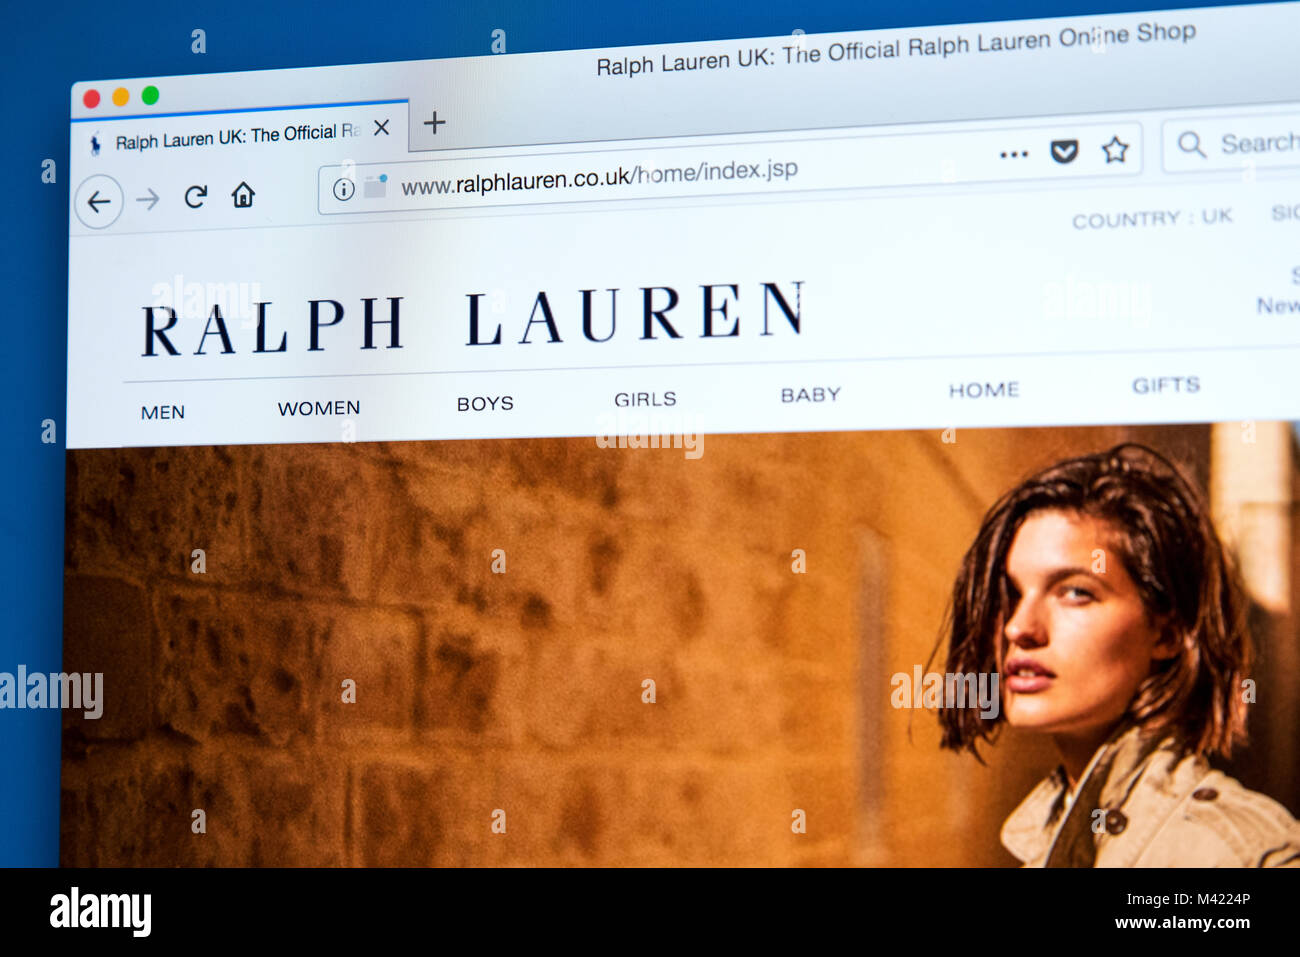 Londres, UK - 8 février 2018 : La page d'accueil du site web officiel de Ralph  Lauren - le créateur de mode Américain, le 8 février 2018 Photo Stock -  Alamy